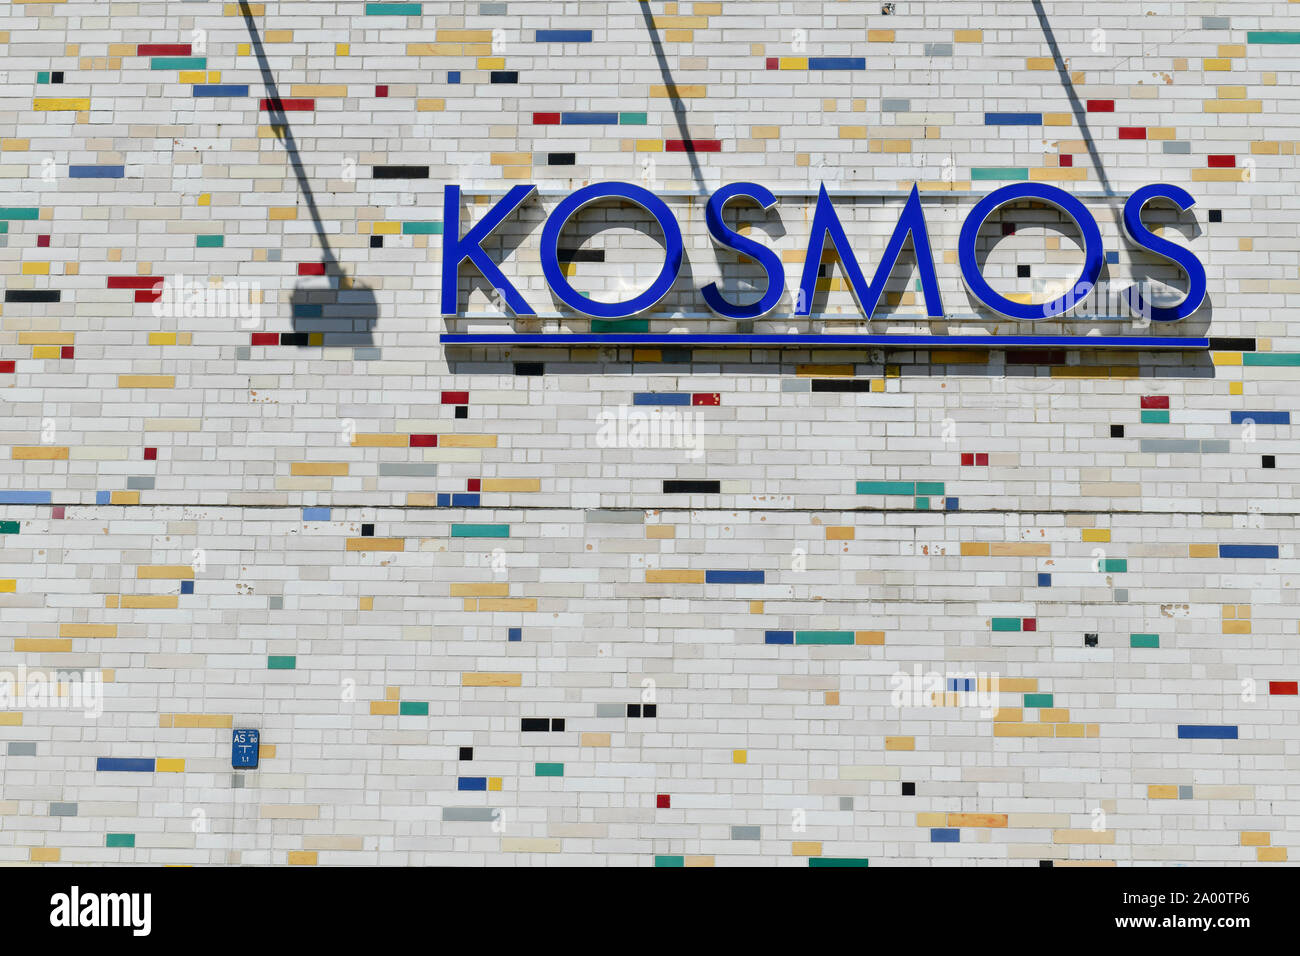 Kosmos Kino, Frankfurter Allee, Friedrichshain, Berlin, Deutschland Banque D'Images